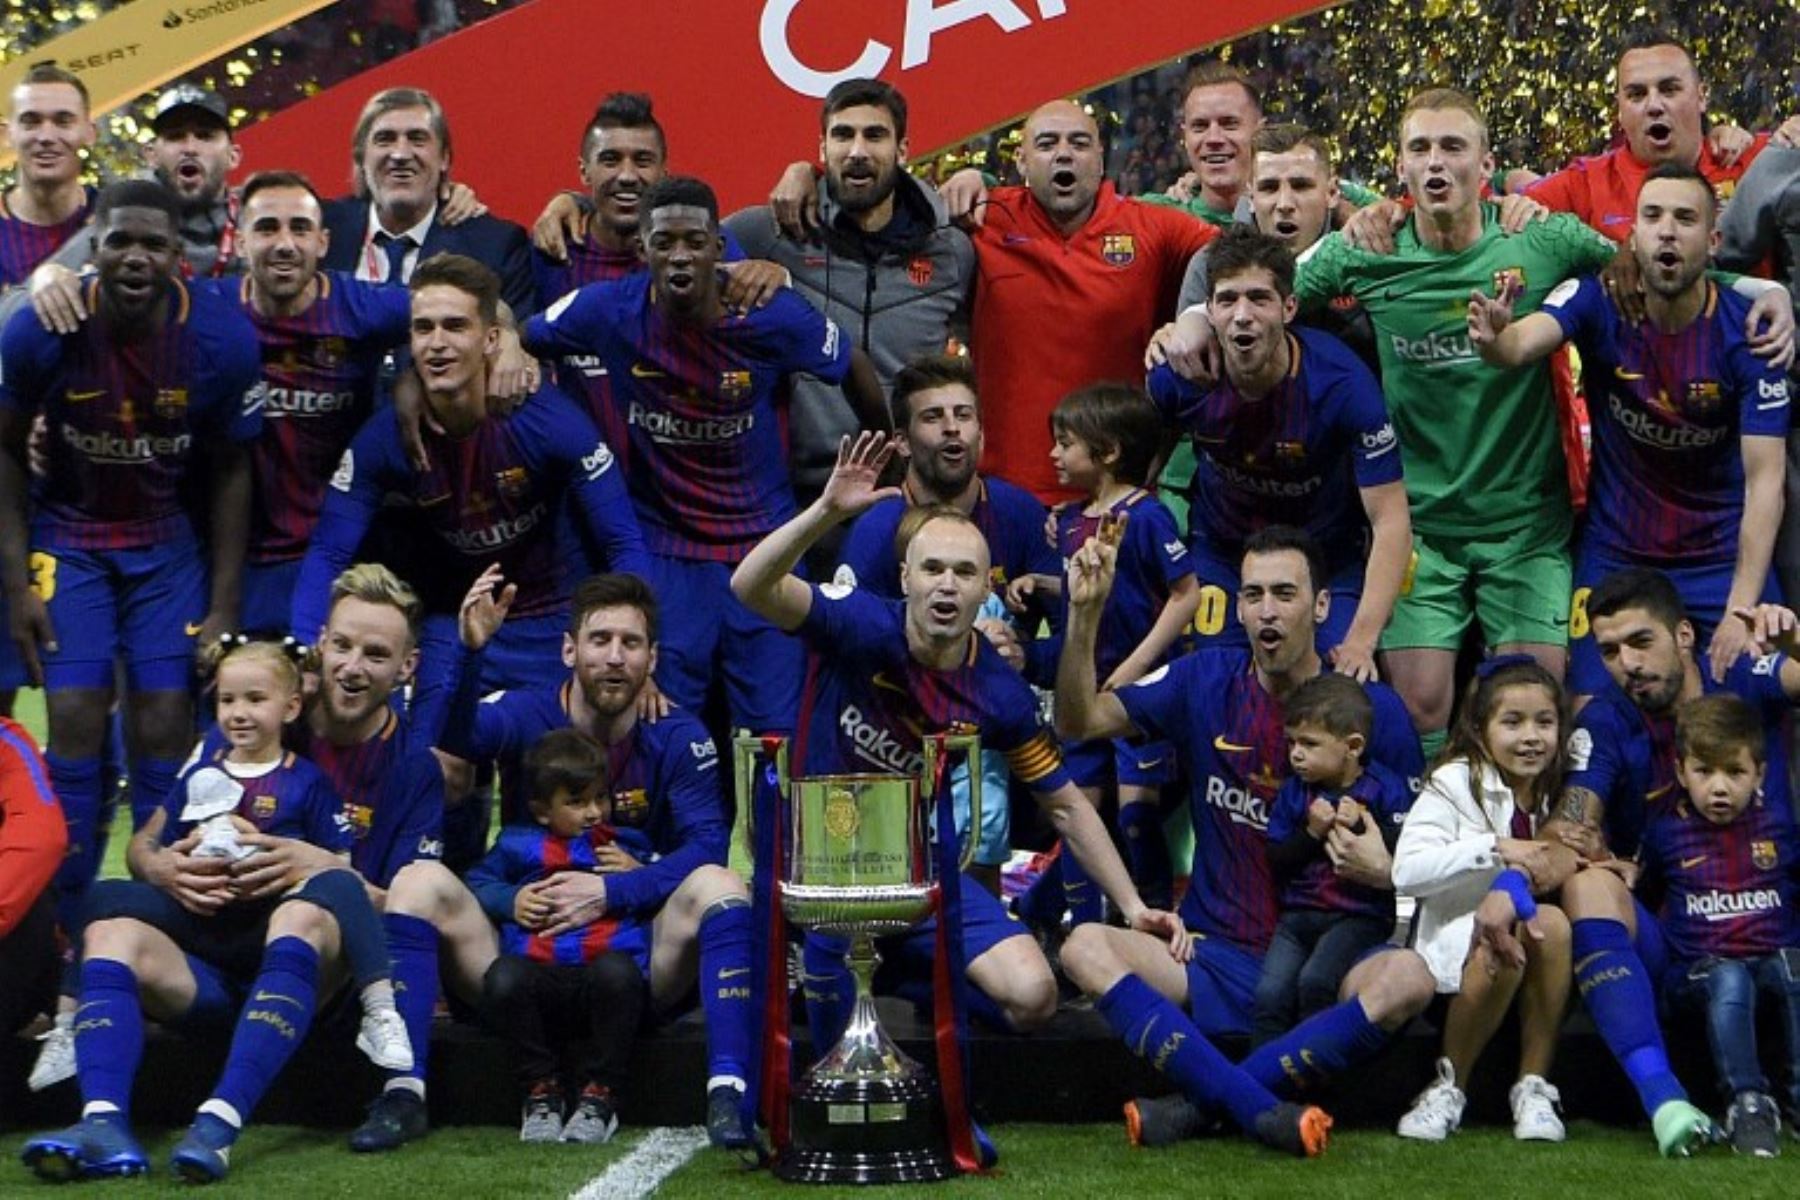 Los jugadores de Barcelona posan con el trofeo después de ganar el partido de fútbol final español Copa del Rey.Foto:AFP